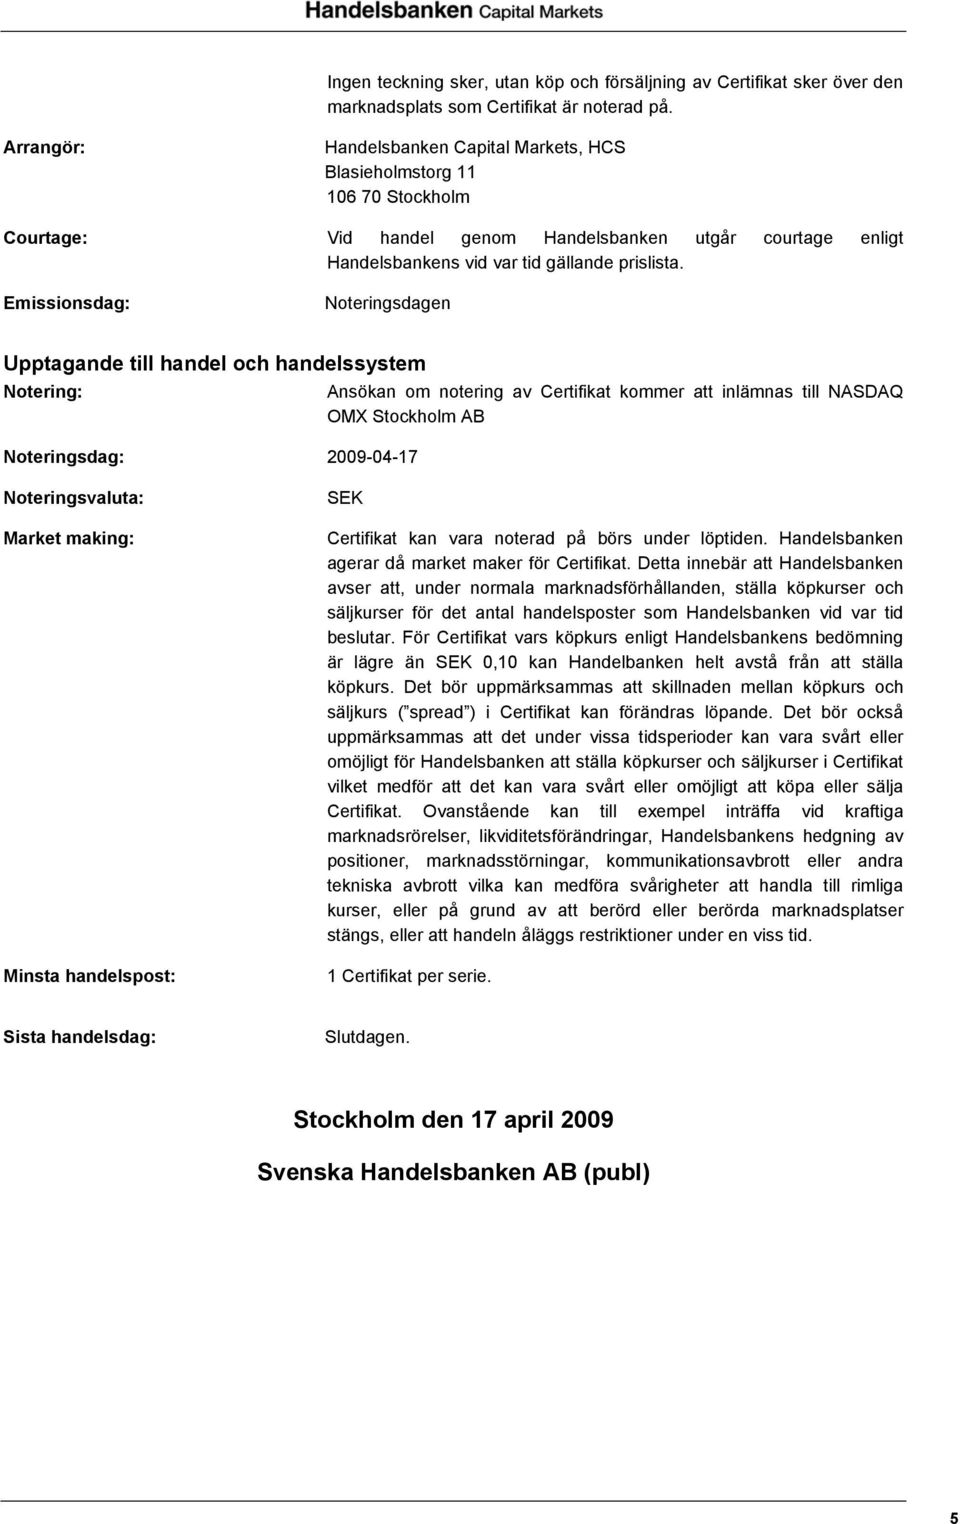 Emissionsdag: Noteringsdagen Upptagande till handel och handelssystem Notering: Noteringsdag: 2009-04-17 Ansökan om notering av Certifikat kommer att inlämnas till NASDAQ OMX Stockholm AB